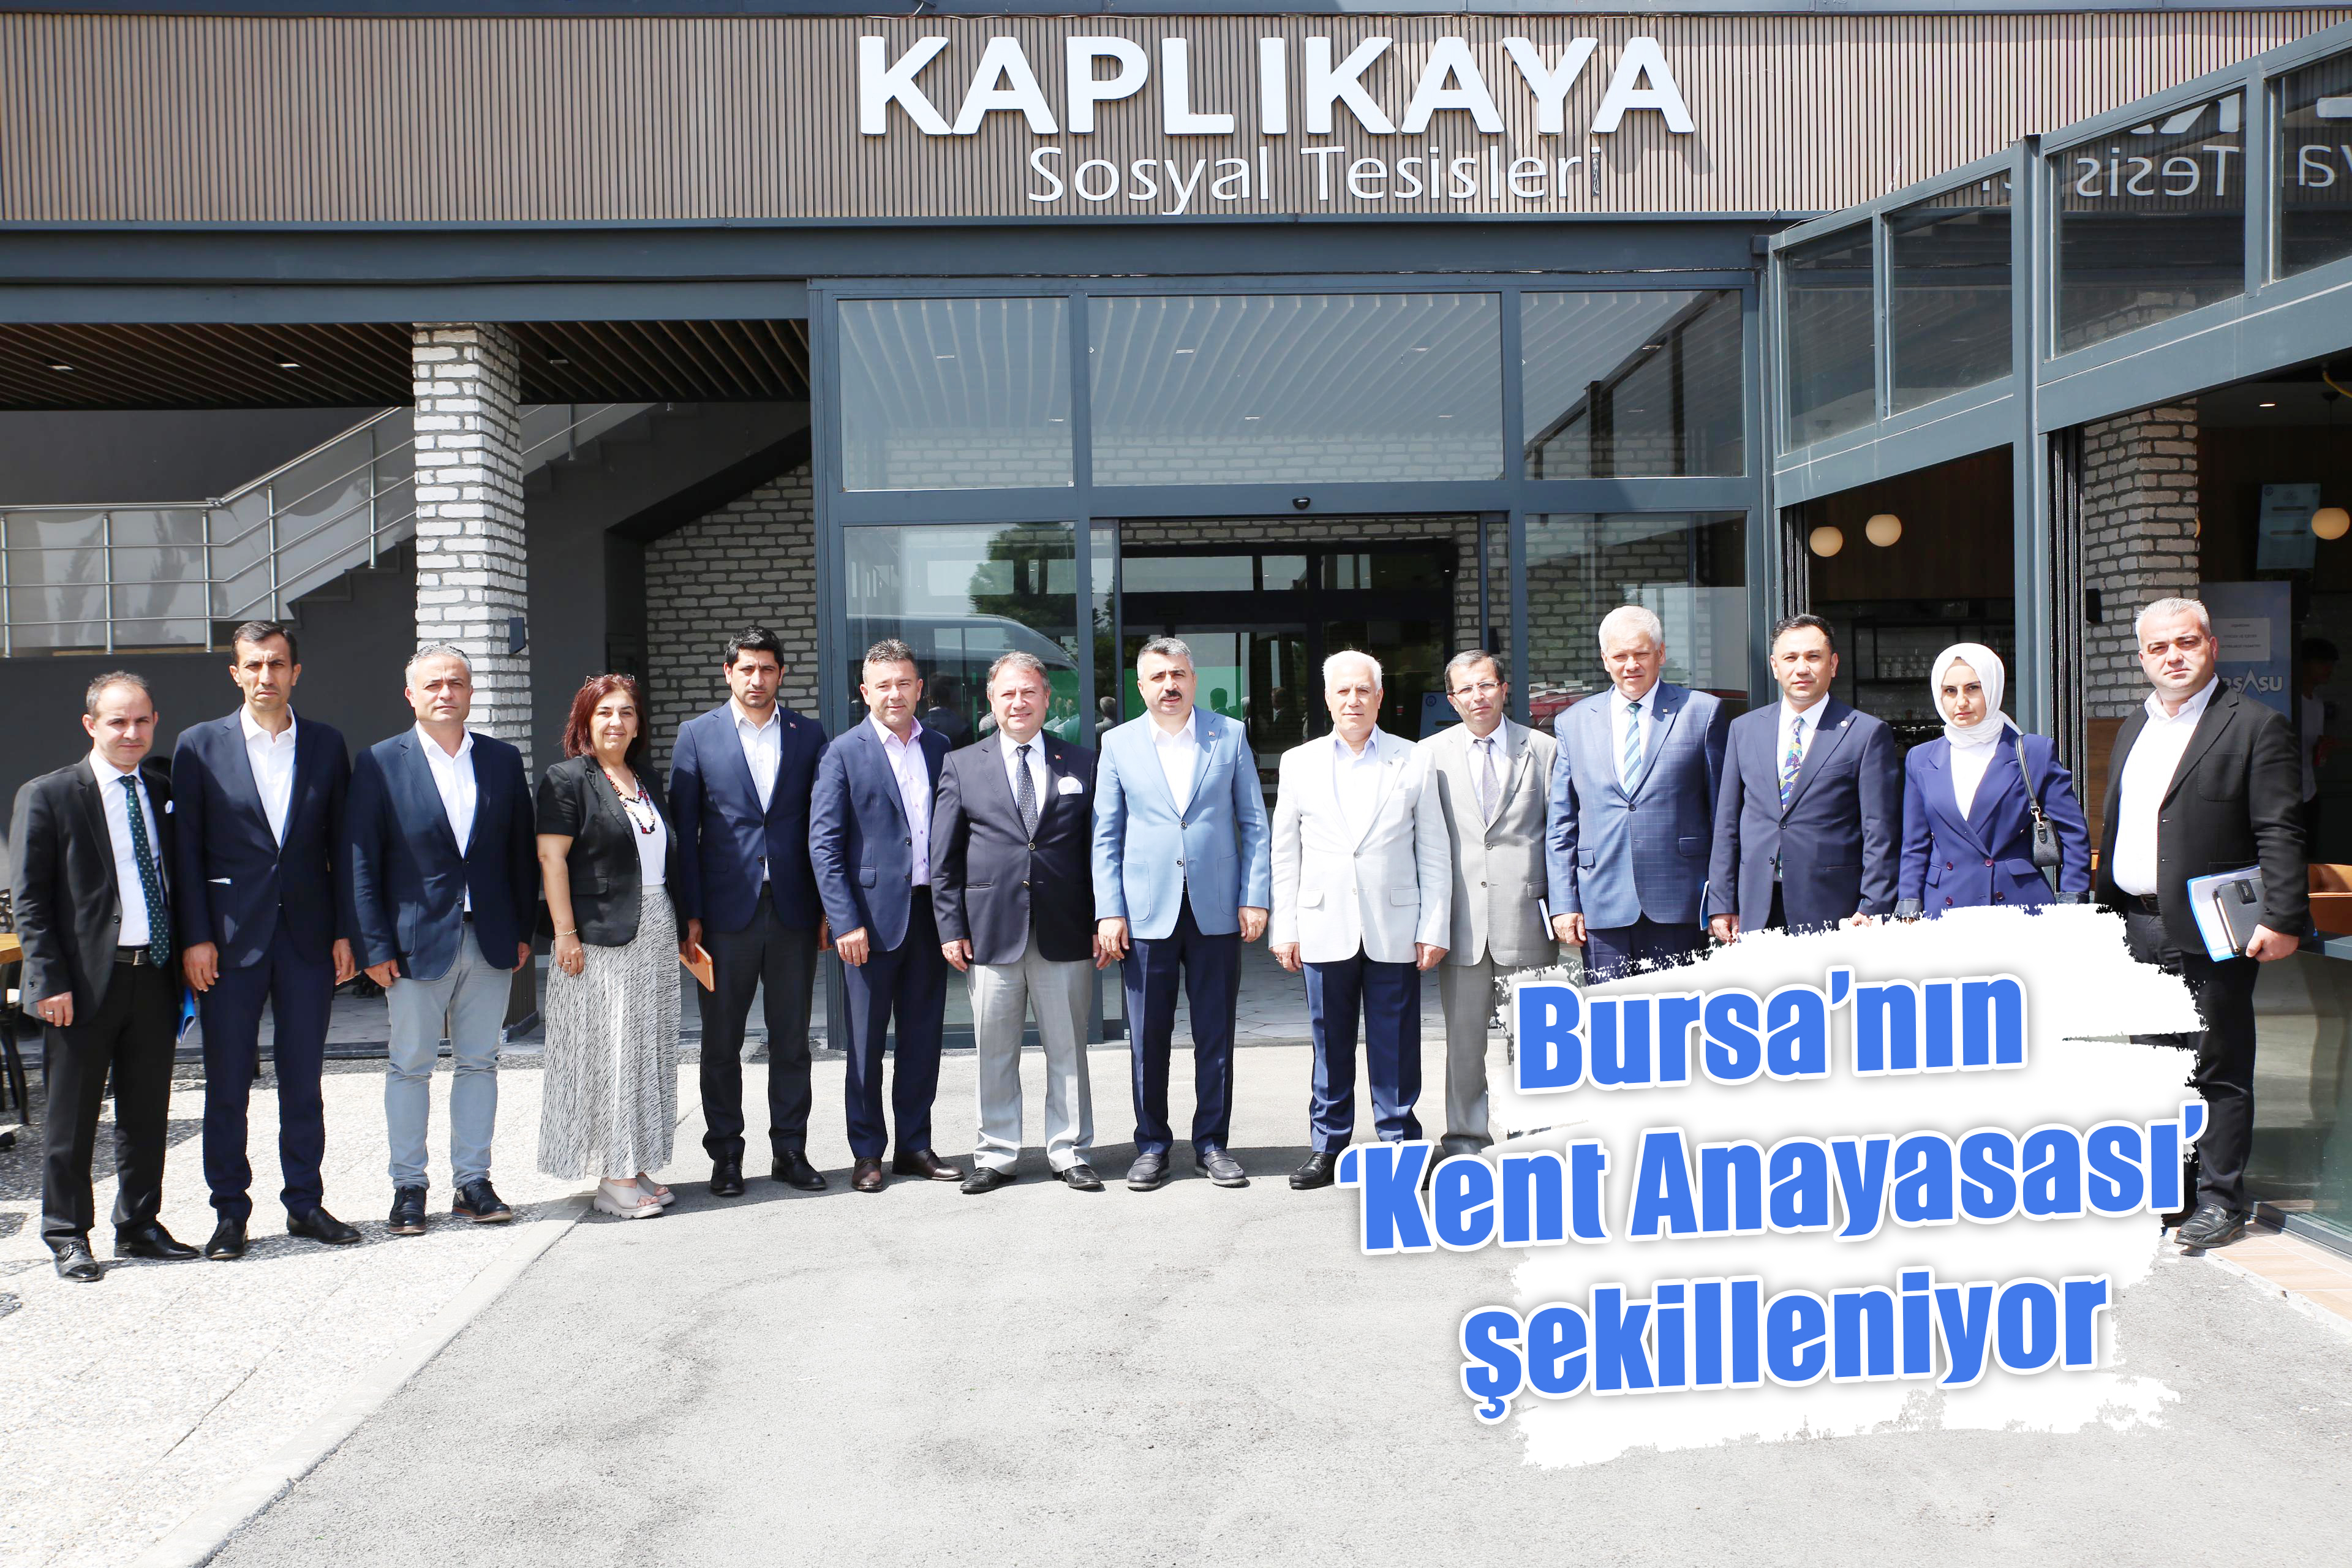 Bursa’nın ‘Kent Anayasası’ şekilleniyor